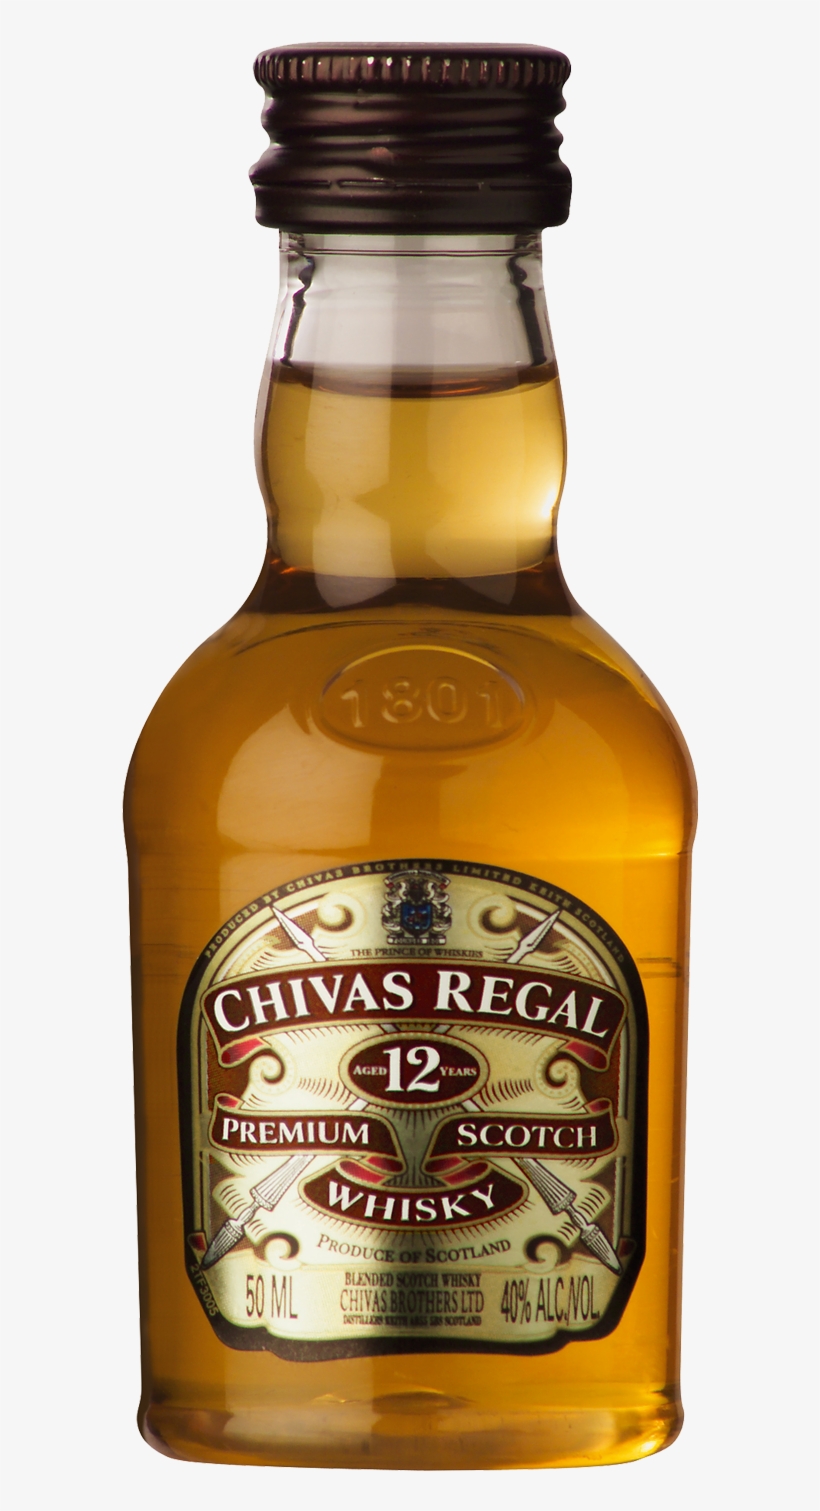 Details About Chivas Regal 12 Year Old Scotch Whisky - Chivas Regal 50ml, transparent png #8419711